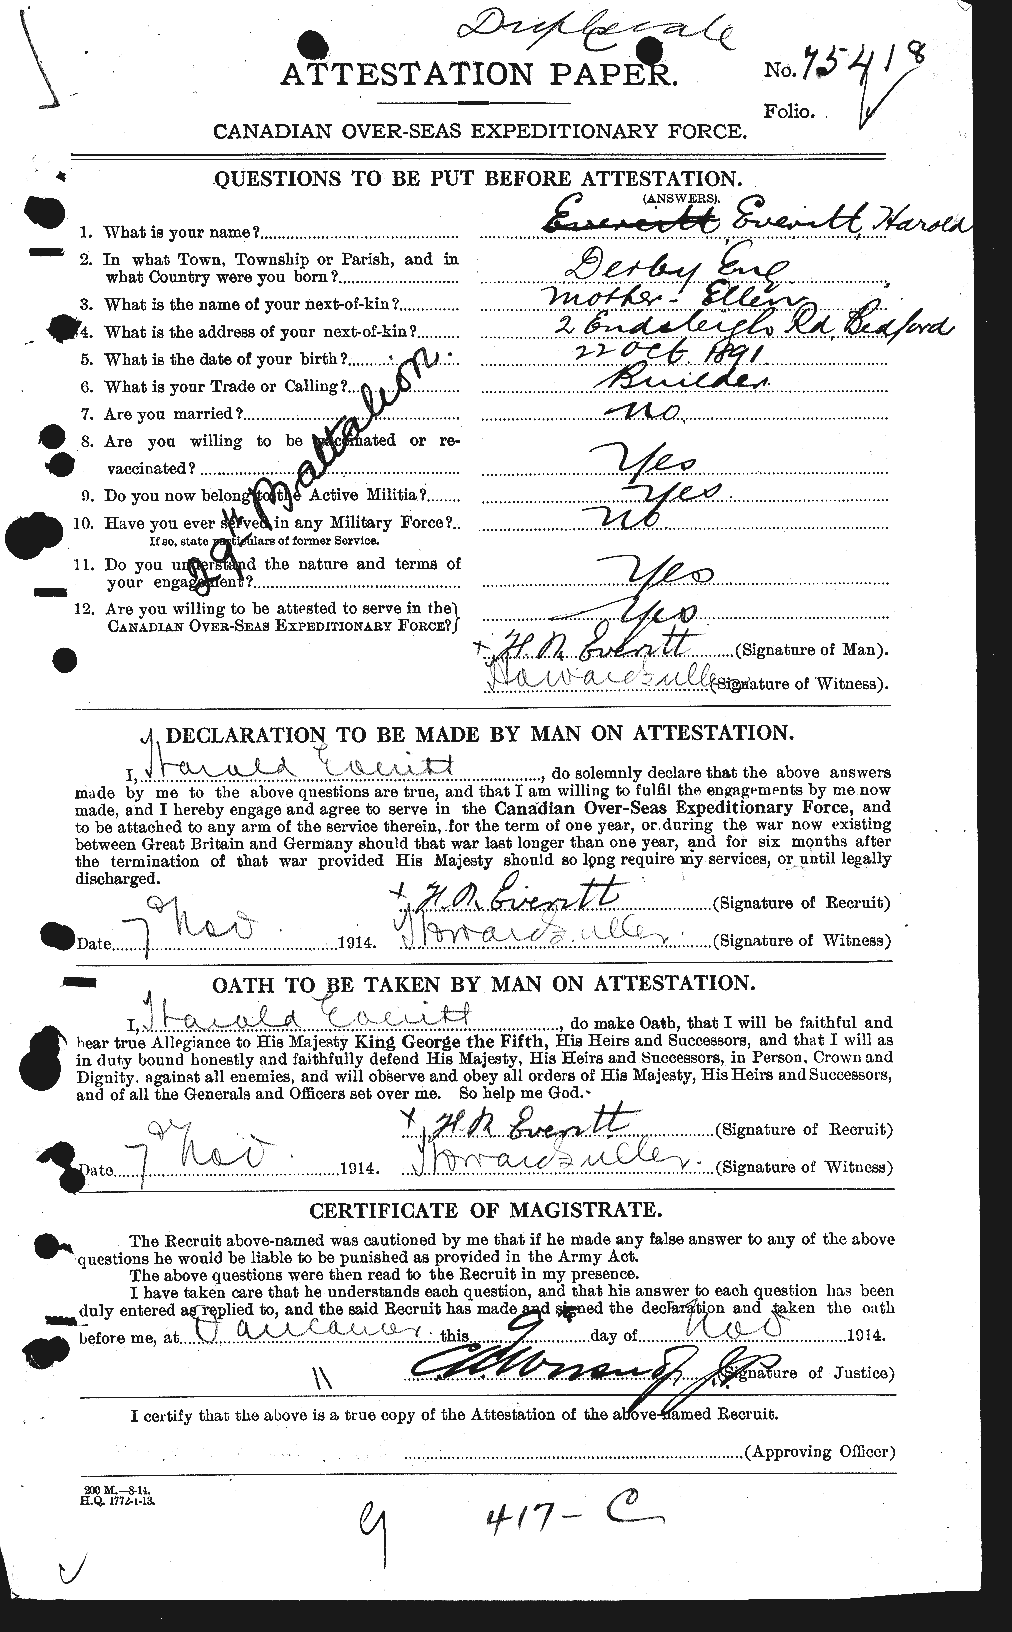 Dossiers du Personnel de la Première Guerre mondiale - CEC 320422a